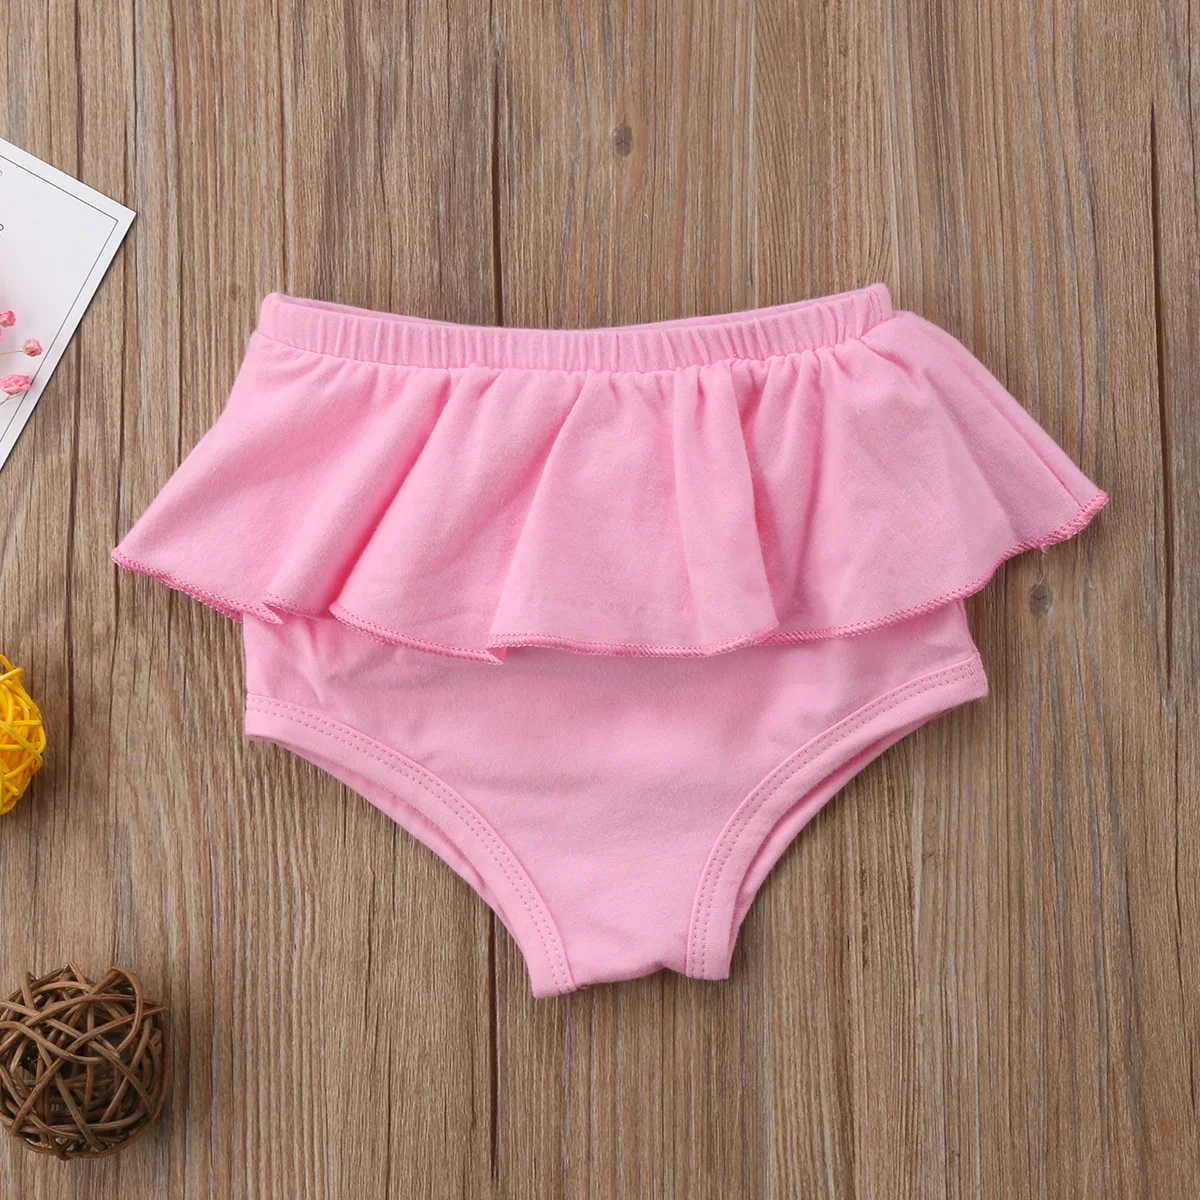 Детские шаровары для новорожденных мальчиков и девочек, штаны с оборками, шорты, трусики-шаровары для детей от 0 до 24 месяцев - Цвет: Розовый